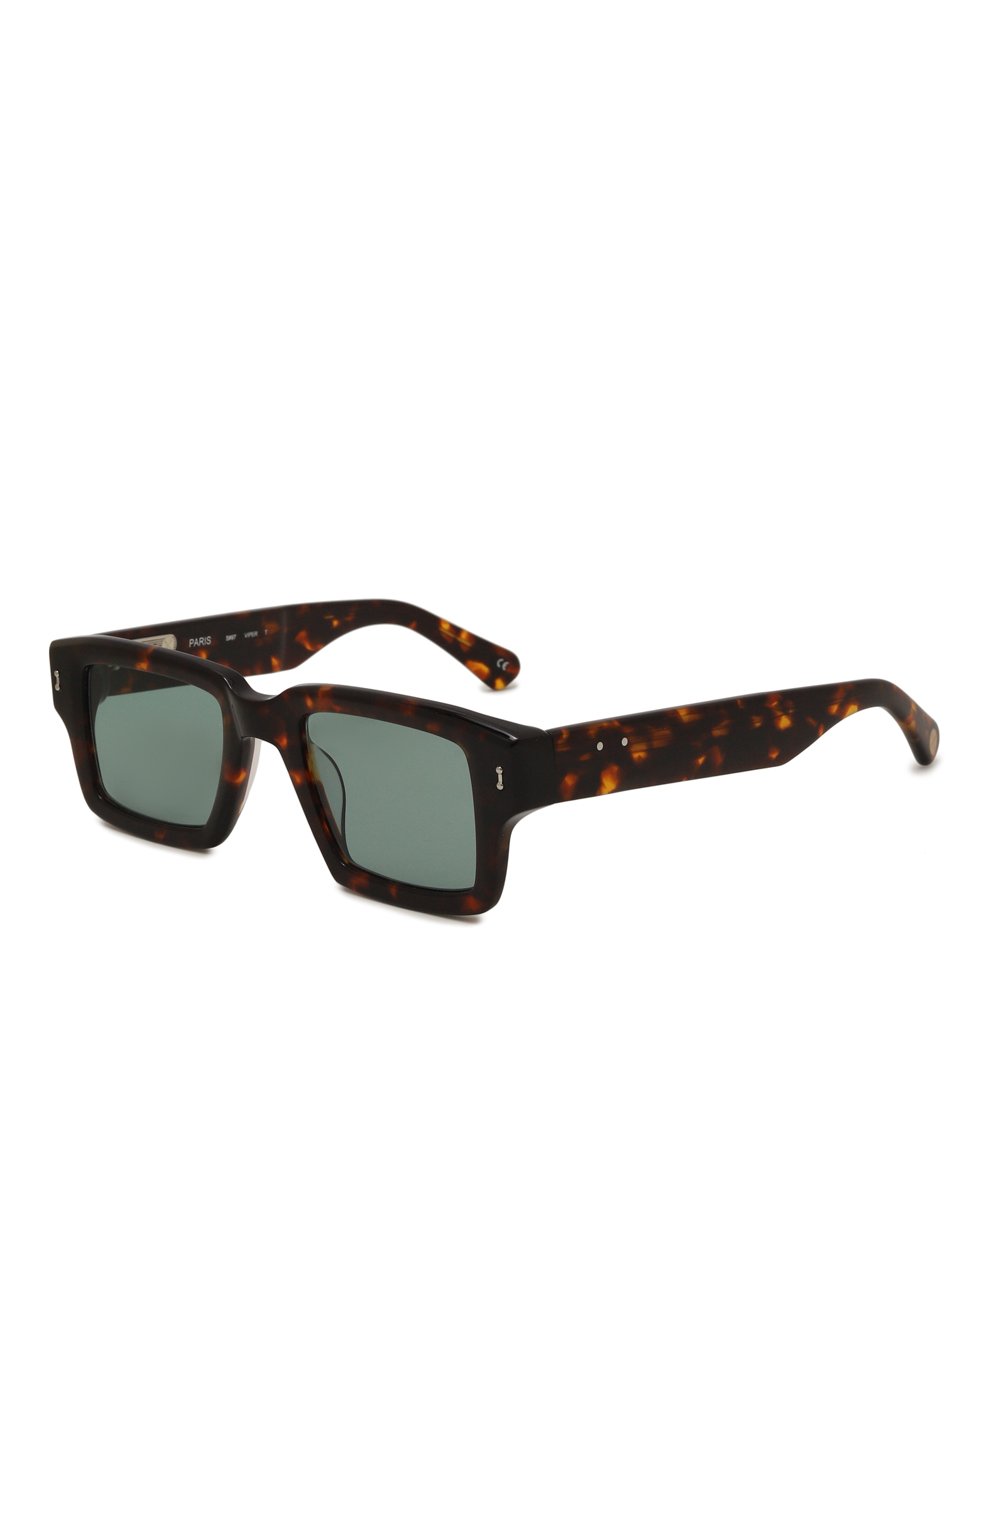 Фото Мужские коричневые солнцезащитные очки PETER&MAY WALK, арт. S#97 VIPER T0RT0ISE KALLA Китай S#97 VIPER T0RT0ISE KALLA 